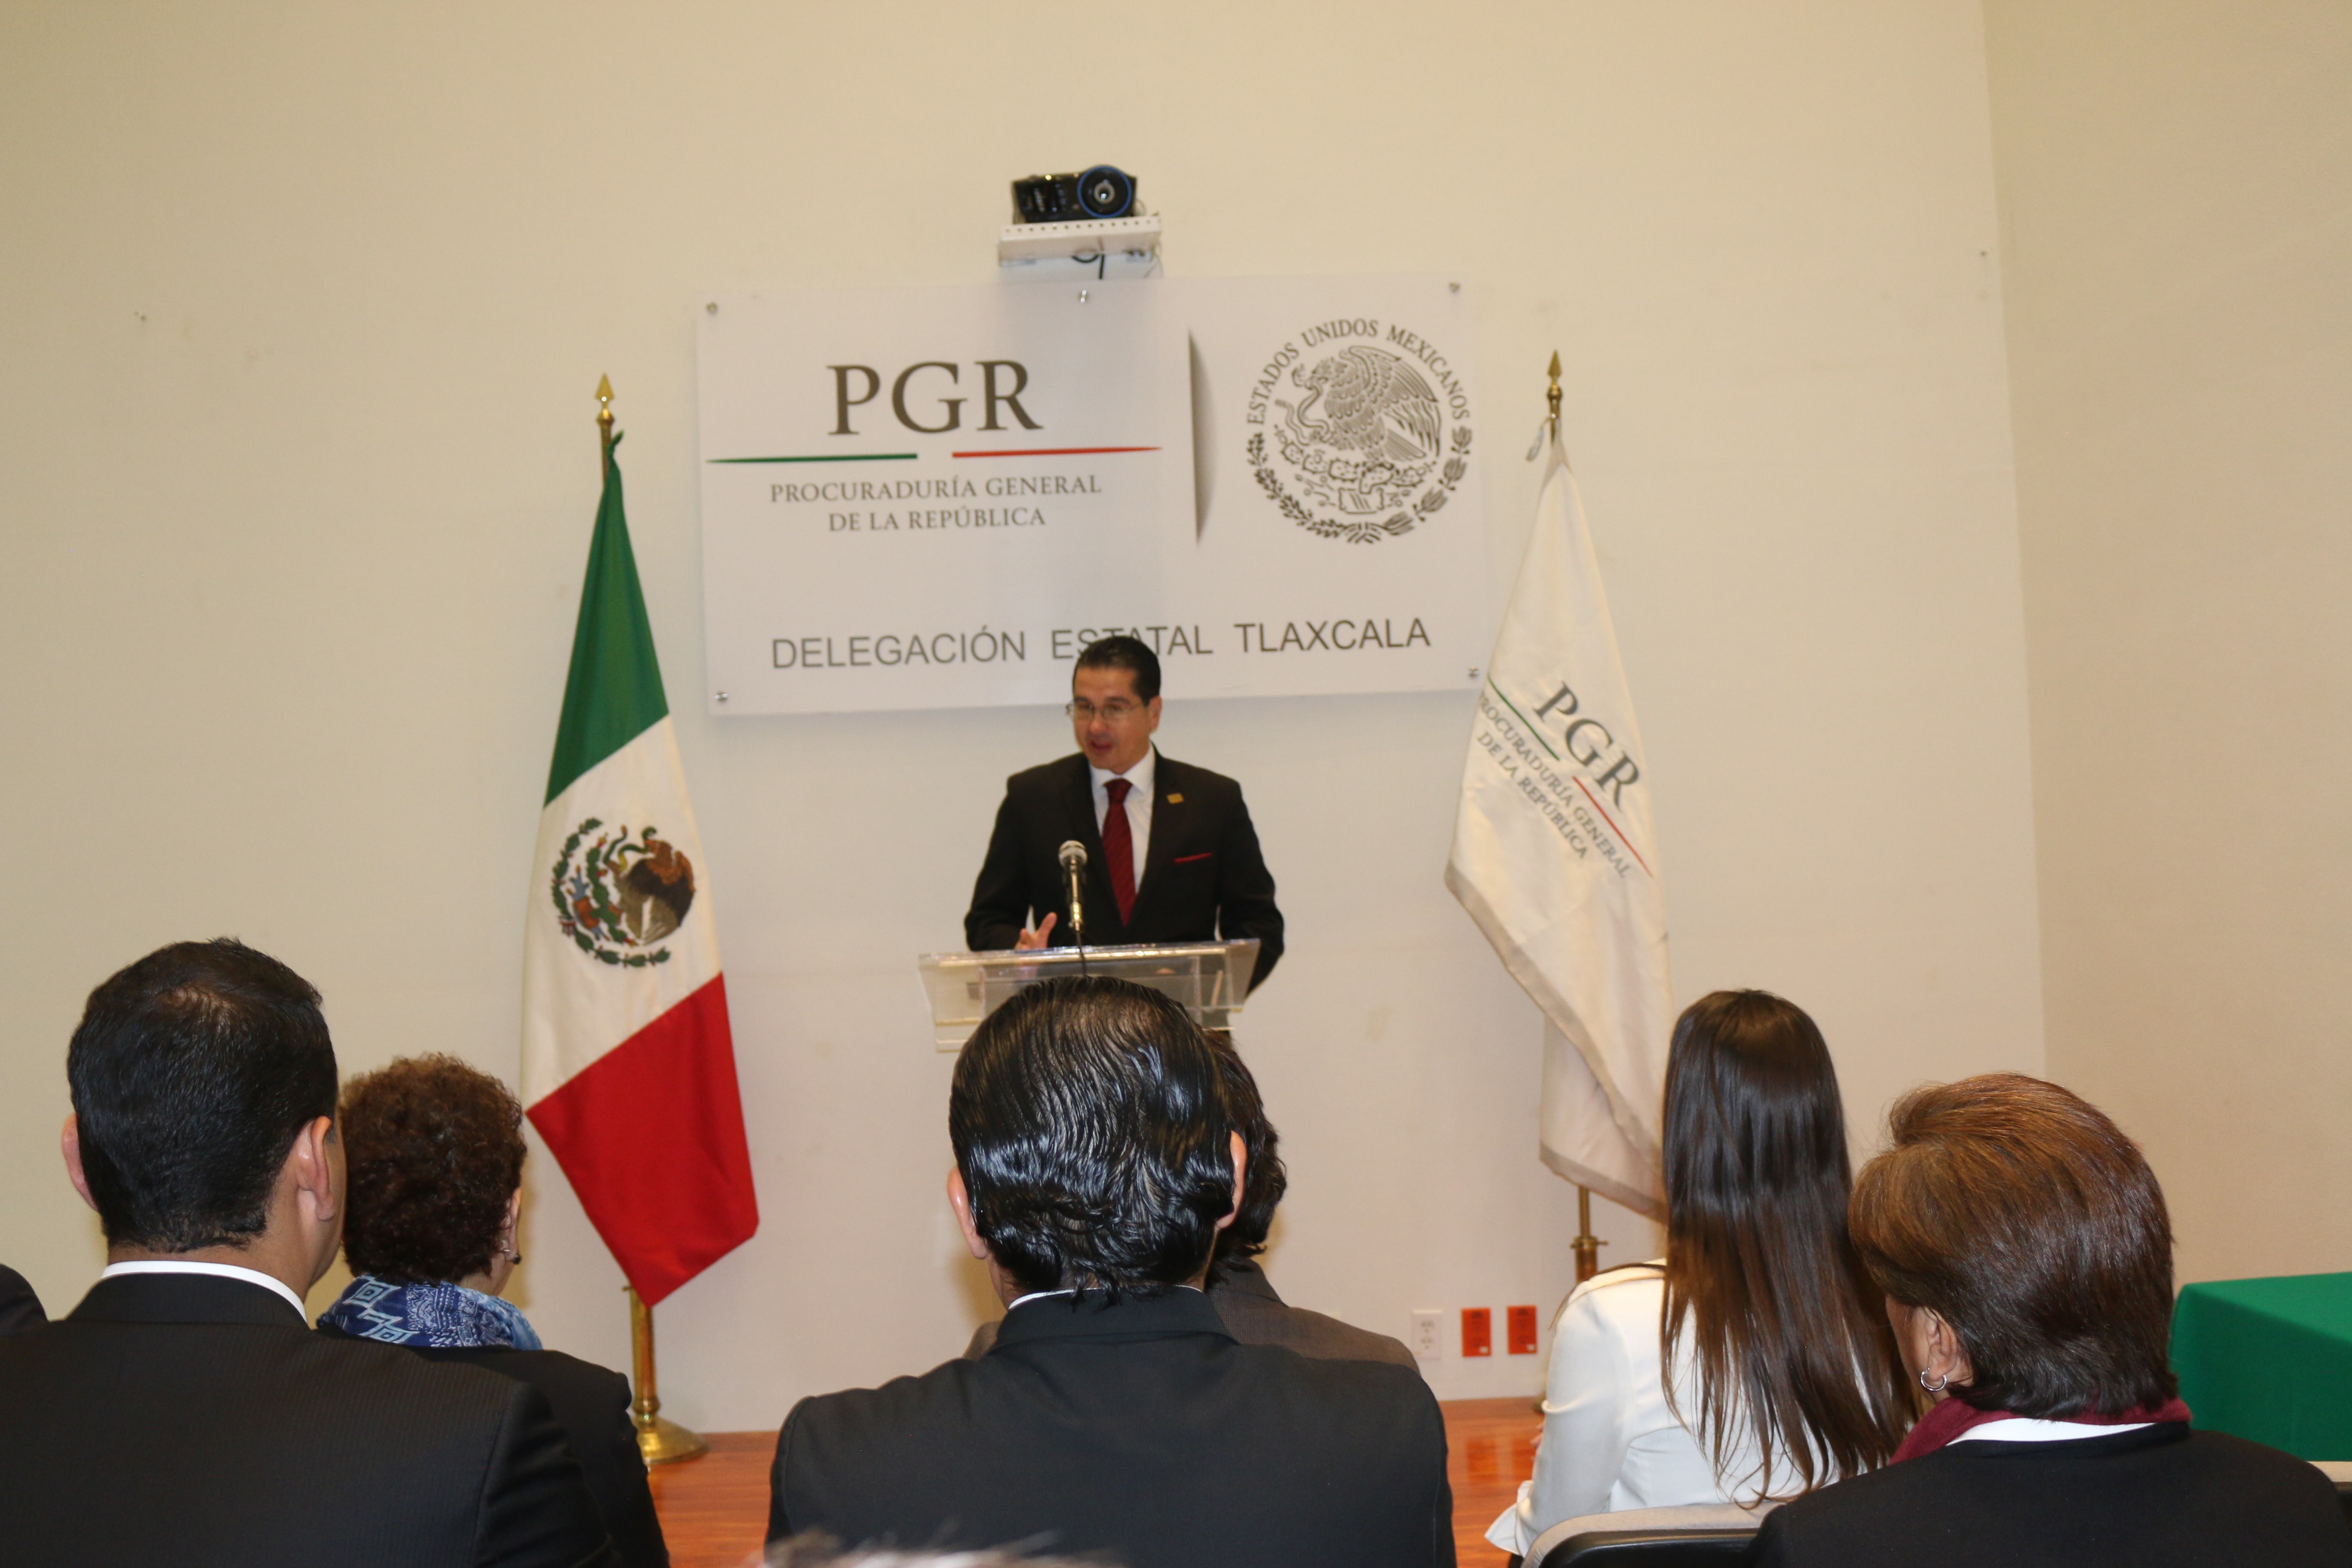 PGR Tlaxcala y el ministerio de justicia de argentina fortalecen los esquemas de justicia y derechos